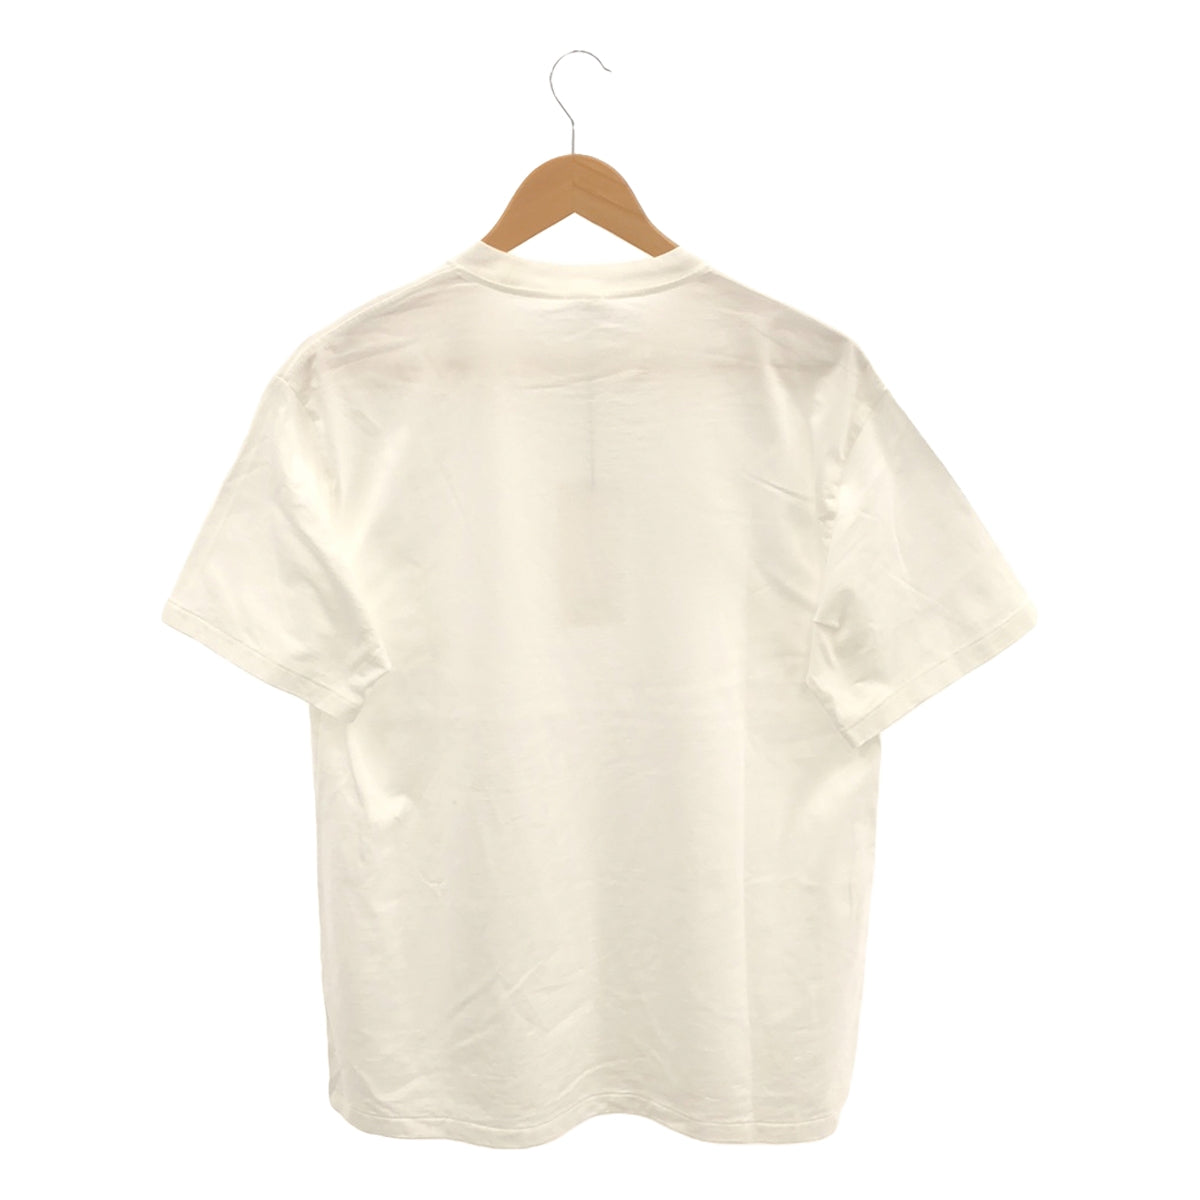 A.PRESSE / アプレッセ | Light Weight T-shirt / クルーネック Tシャツ | 2 | メンズ